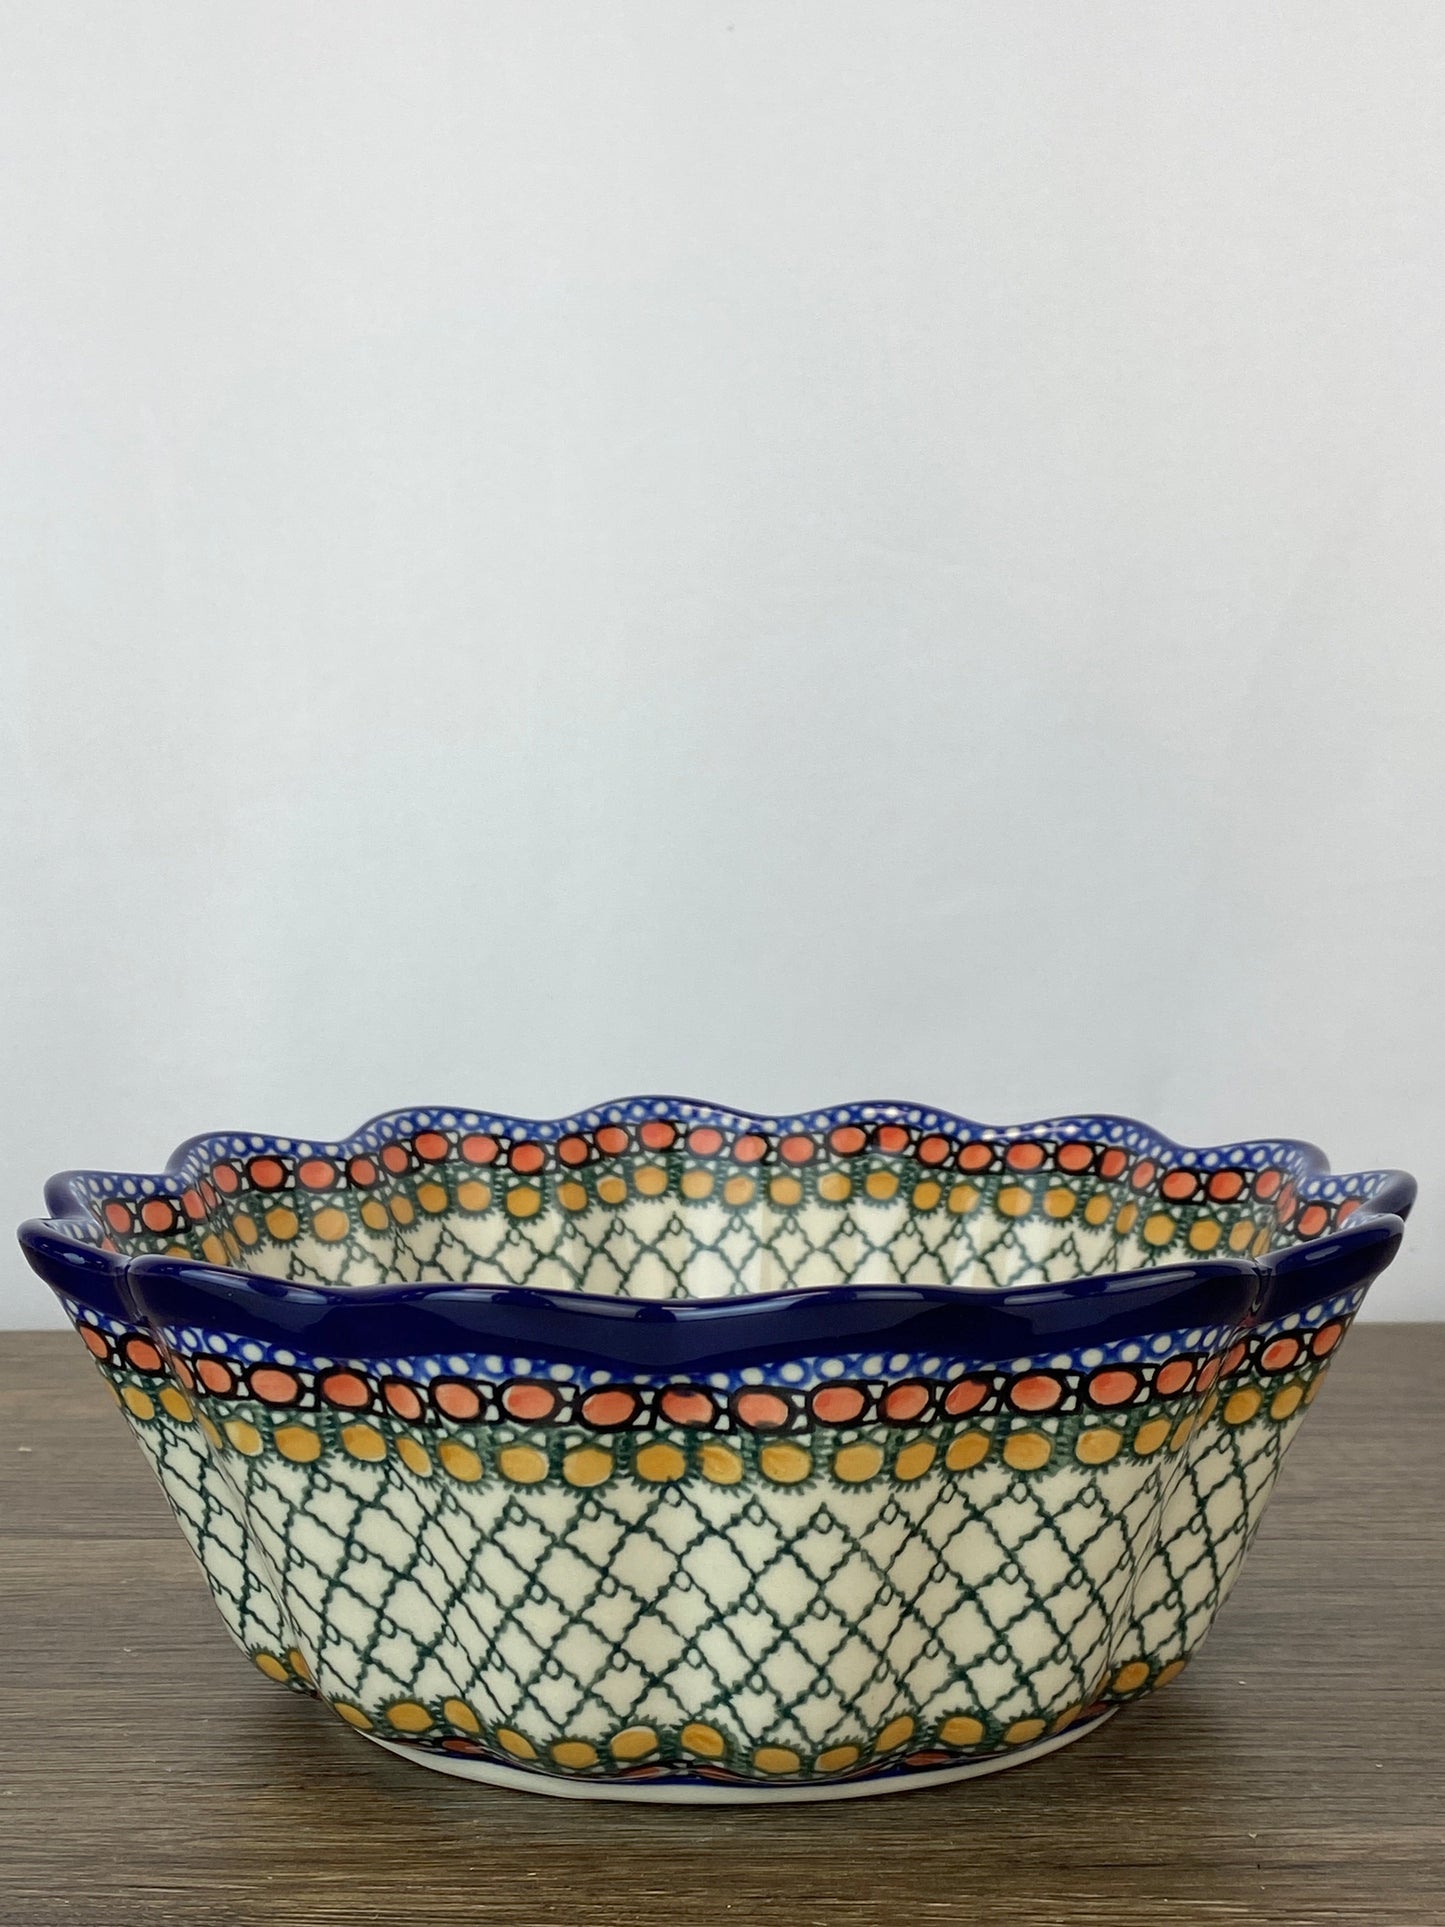 SALE Large Scalloped Unikat Bowl - Shape 913 - Pattern U81